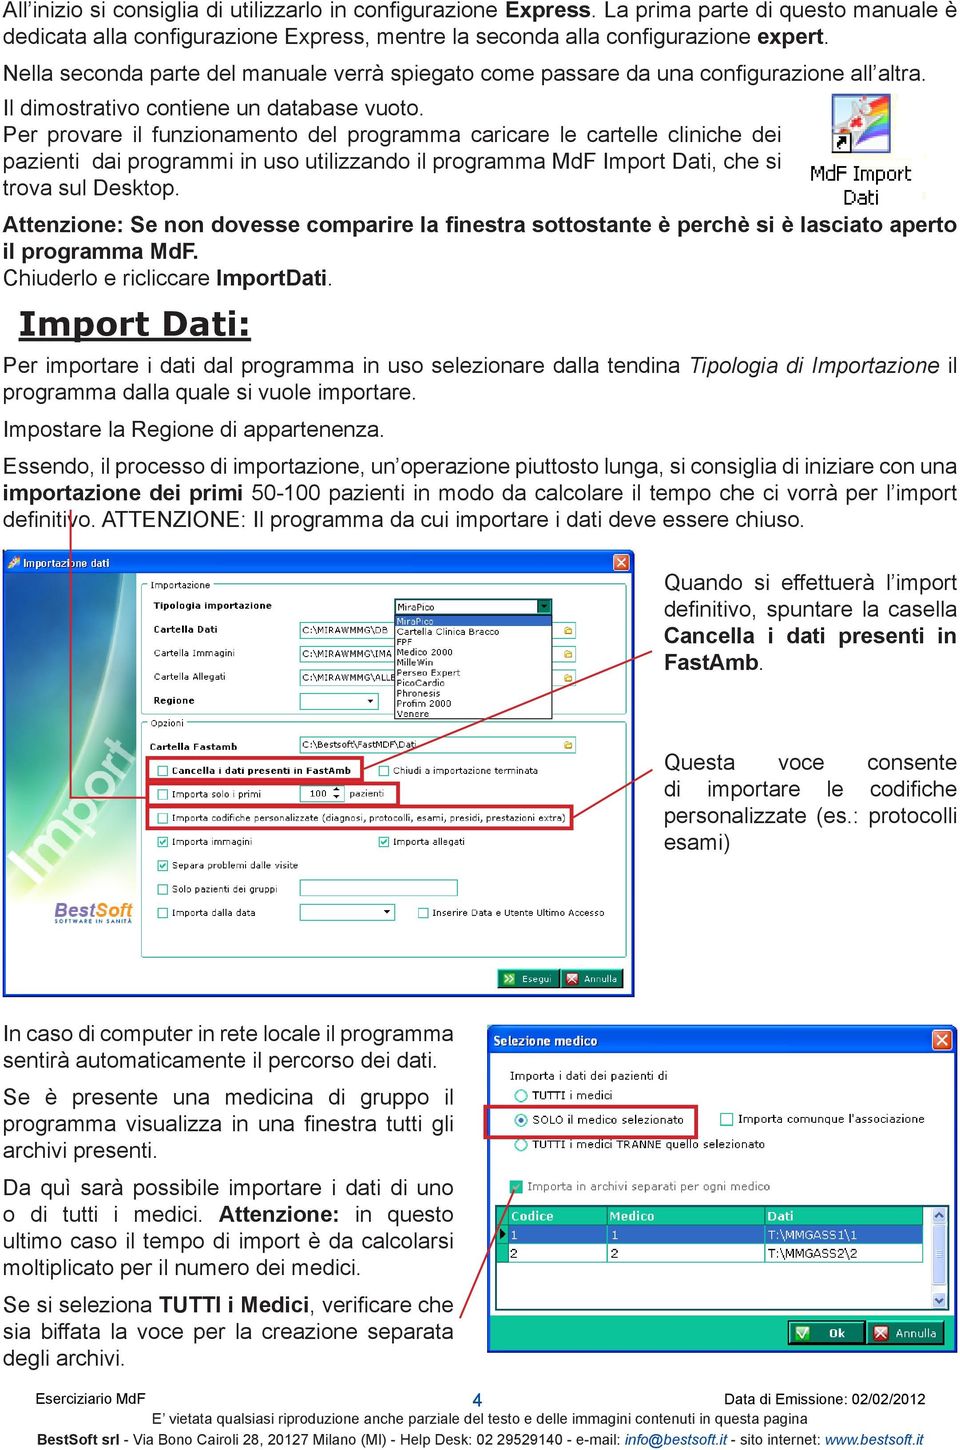 Per provare il funzionamento del programma caricare le cartelle cliniche dei pazienti dai programmi in uso utilizzando il programma MdF Import Dati, che si trova sul Desktop.